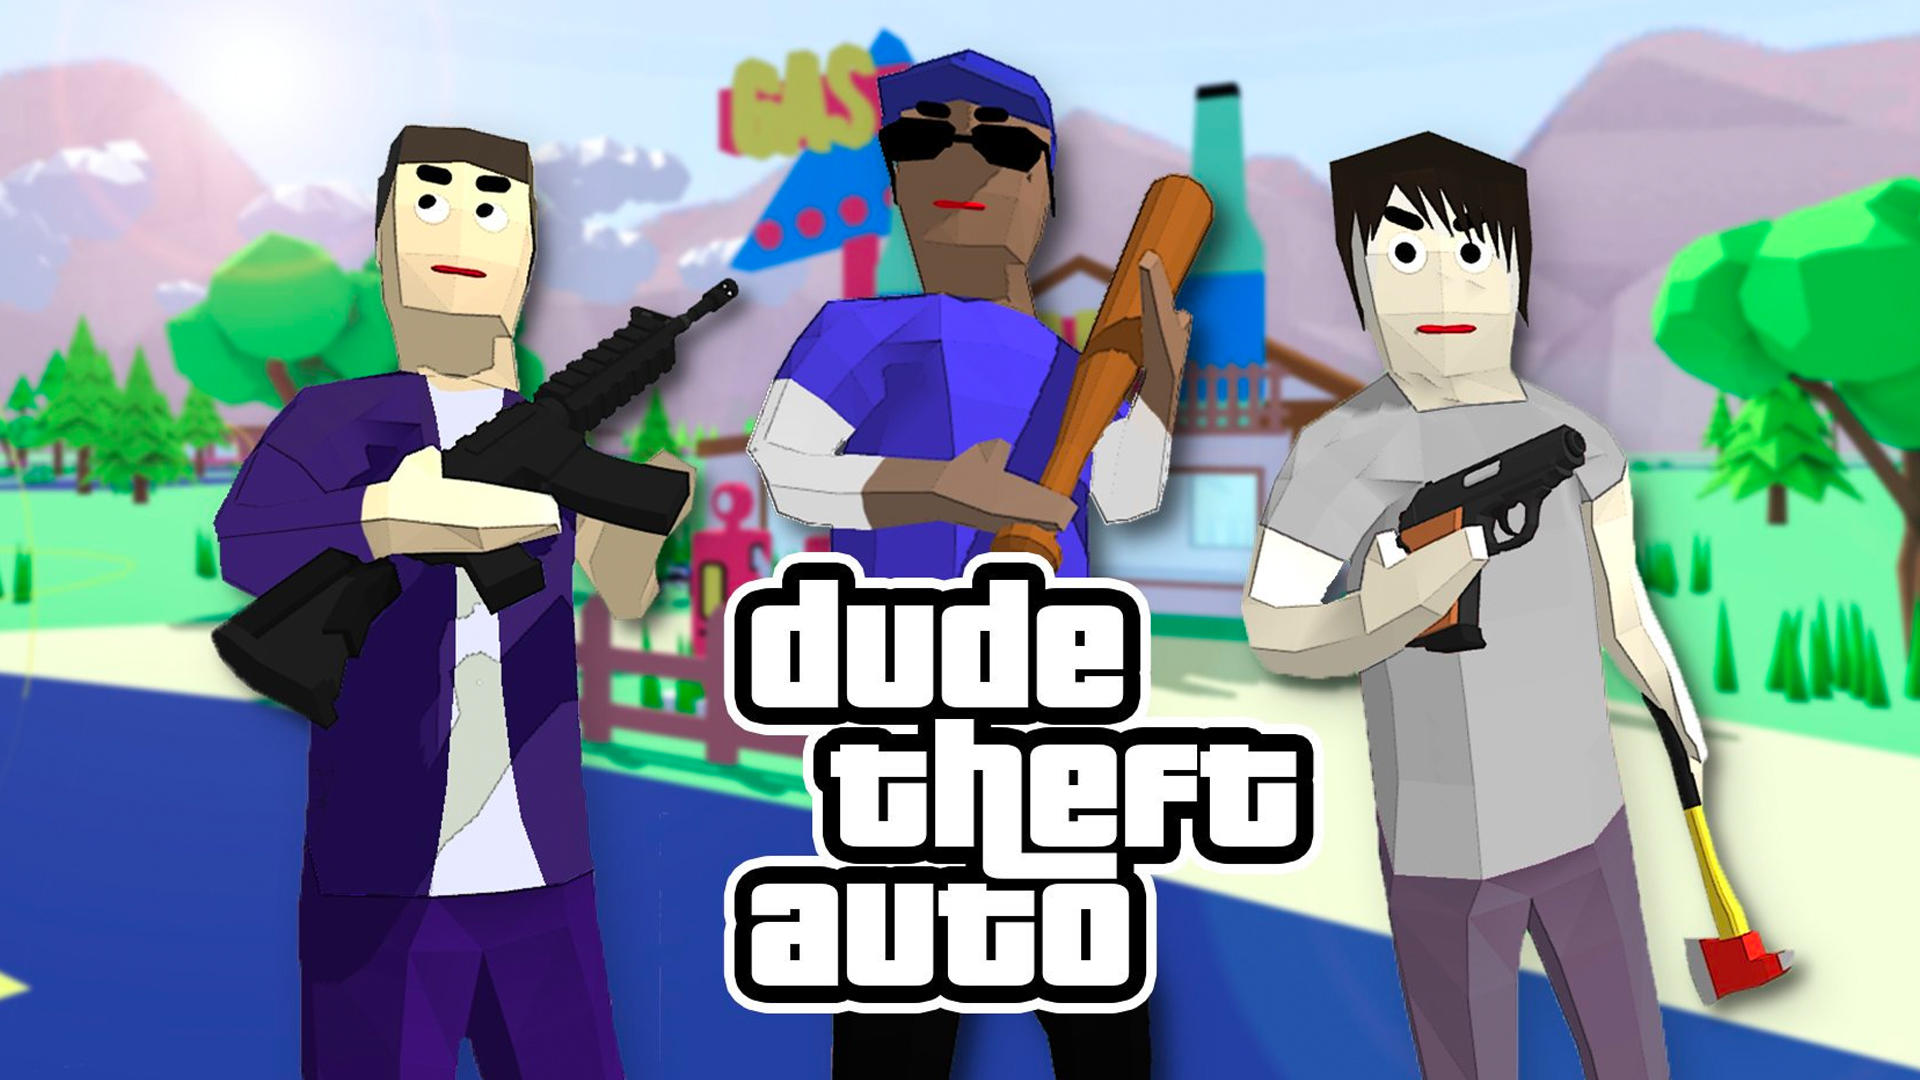 Banner of Dude Theft Wars Jeux de tir 0.9.0.9c2